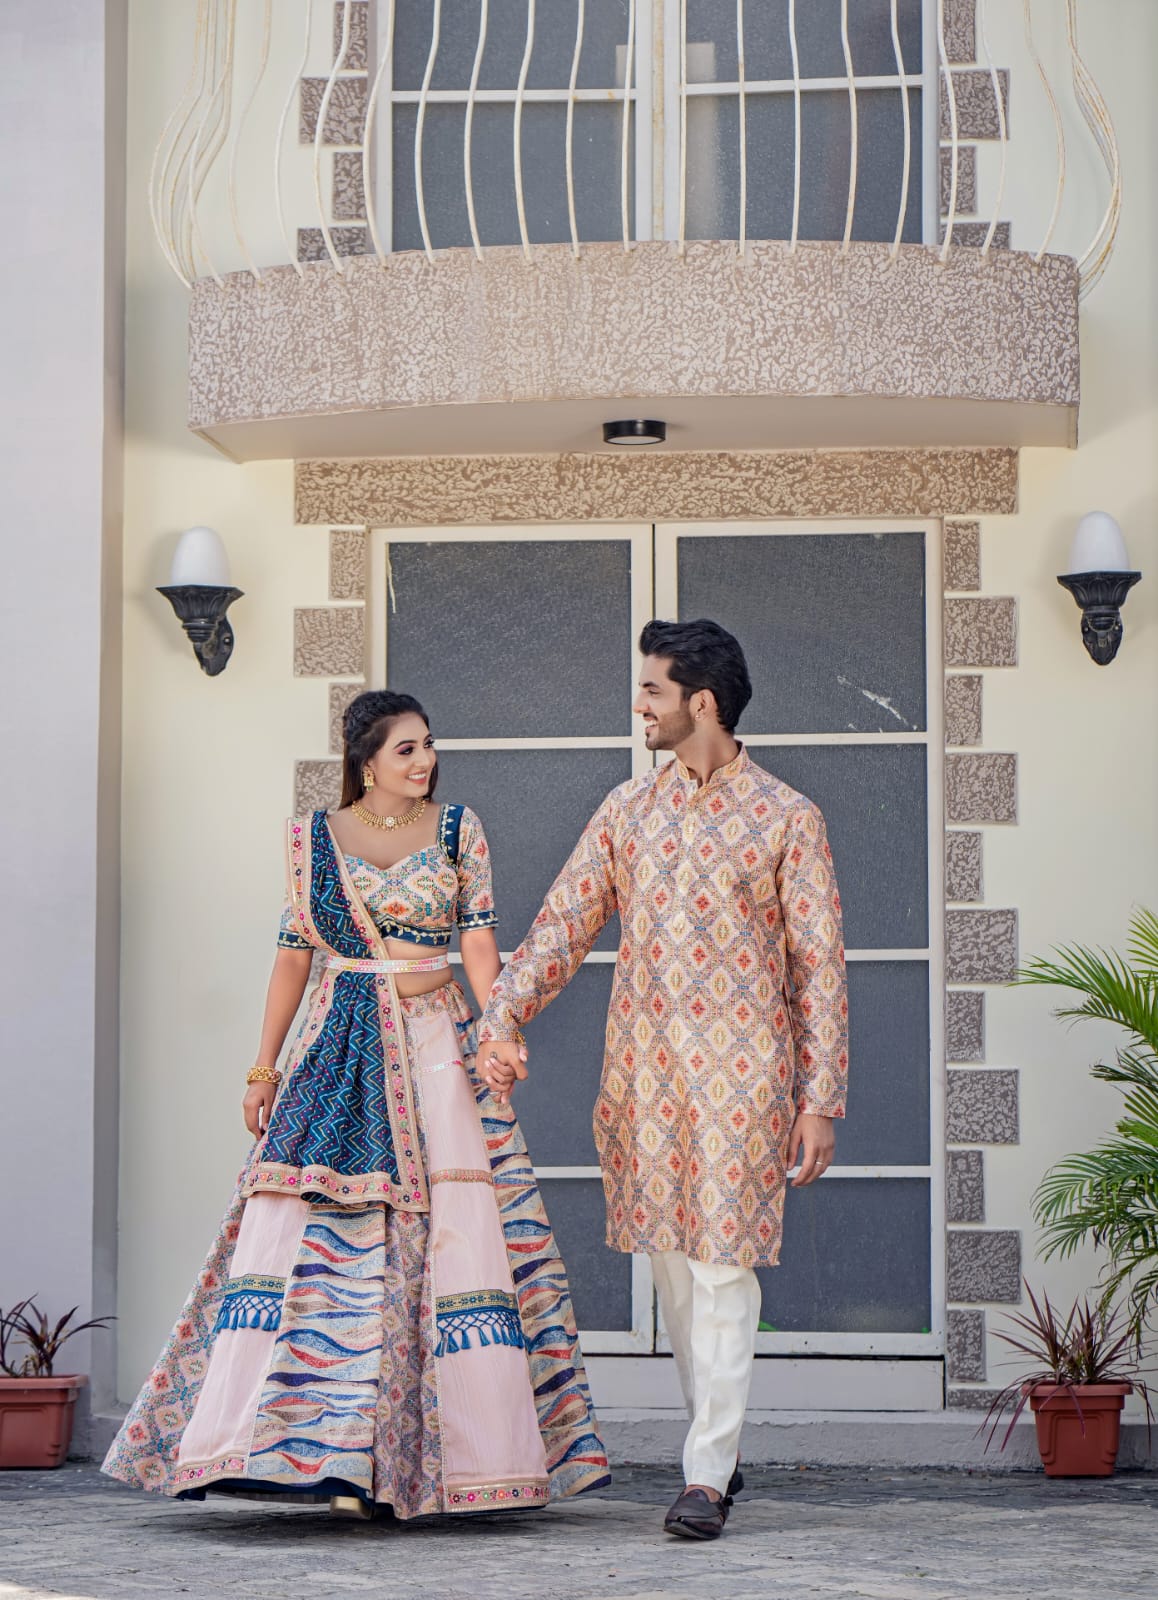 Black Long Sleeve Lehenga Choli and Coat Pant Combo WJ115736 | Indian  wedding outfits, Wedding dresses men indian, Indian fashion dresses